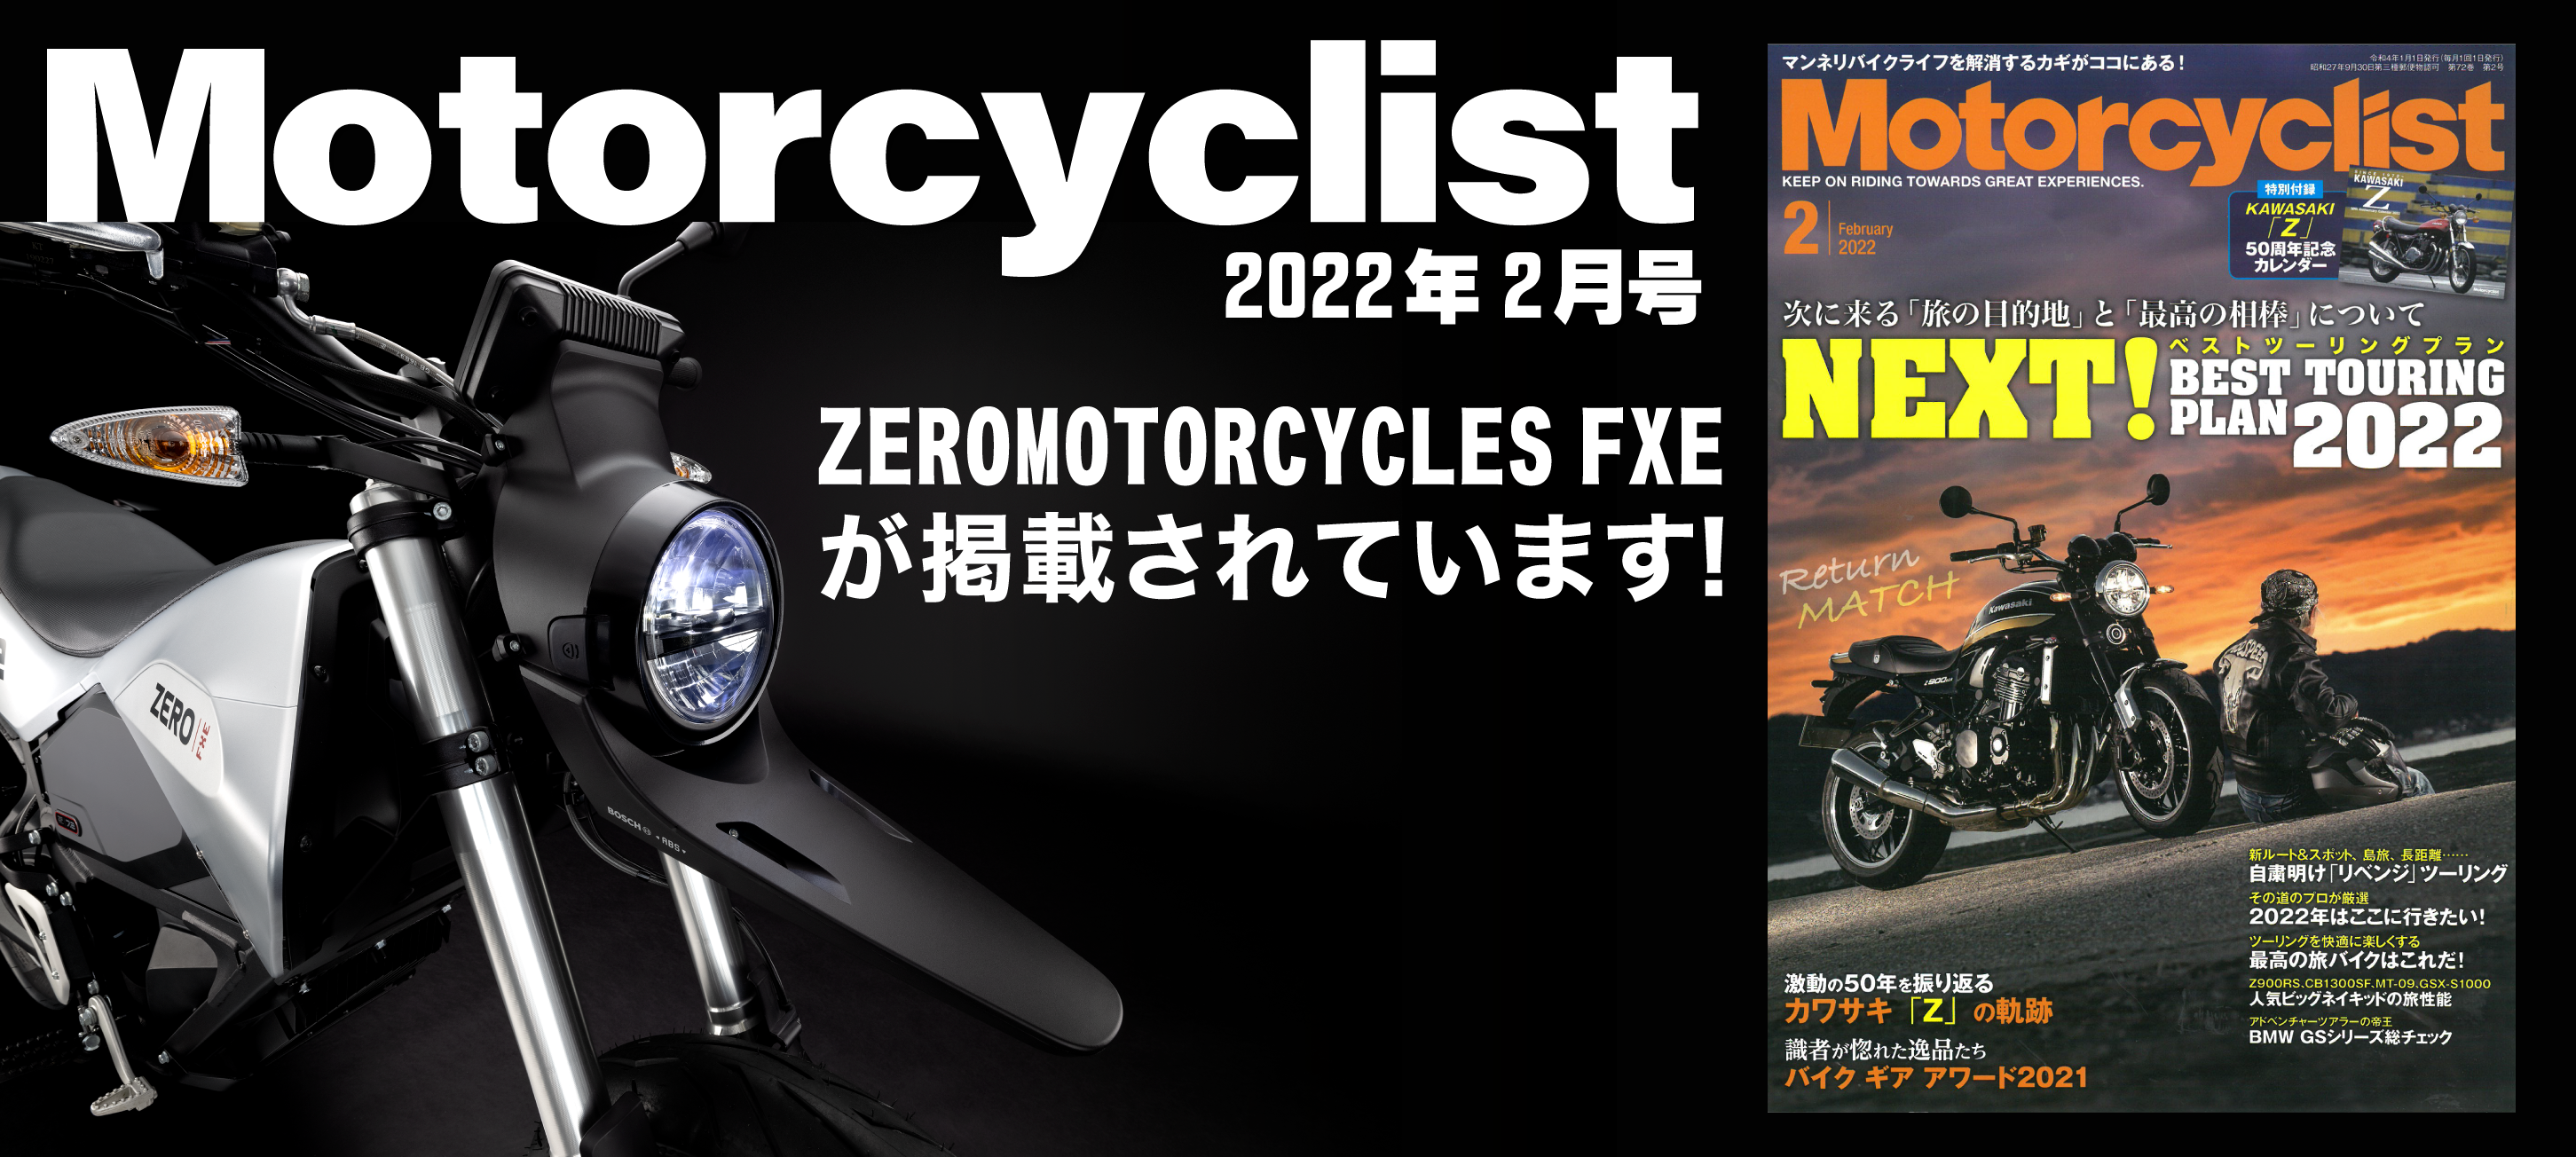 Motorcyclist2月号に ZERO MOTORCYCLES FXE が掲載されています